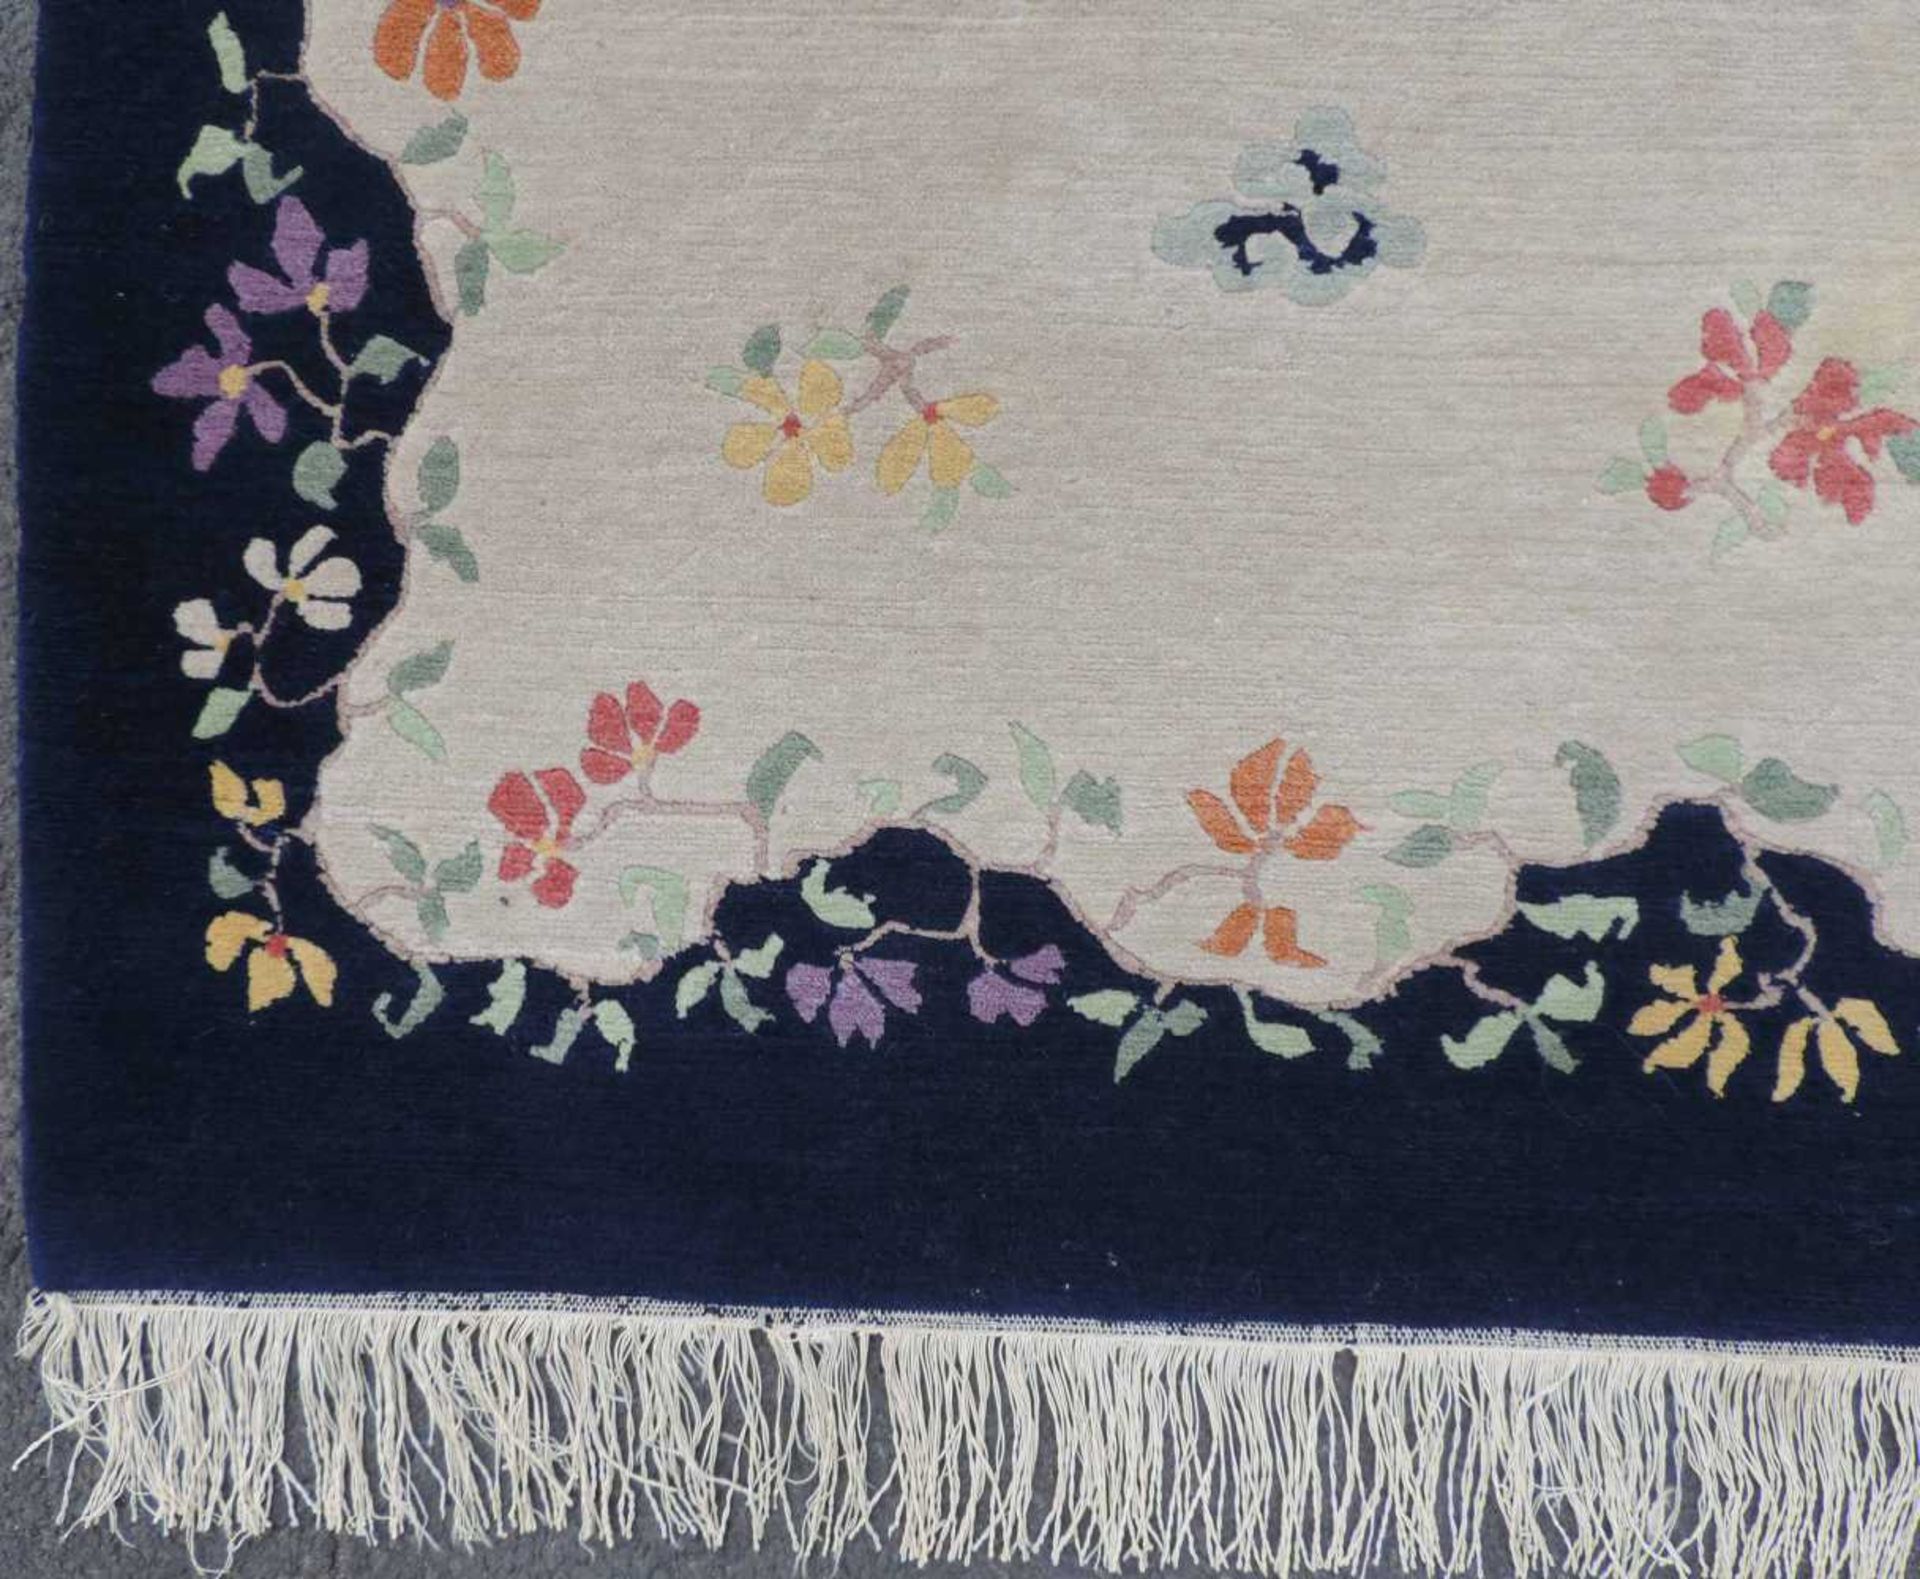 Blütenteppich China. 245 cm x 167 cm. Handgeknüpft, Wolle auf Baumwolle. Blossoms carpet China. - Bild 5 aus 12